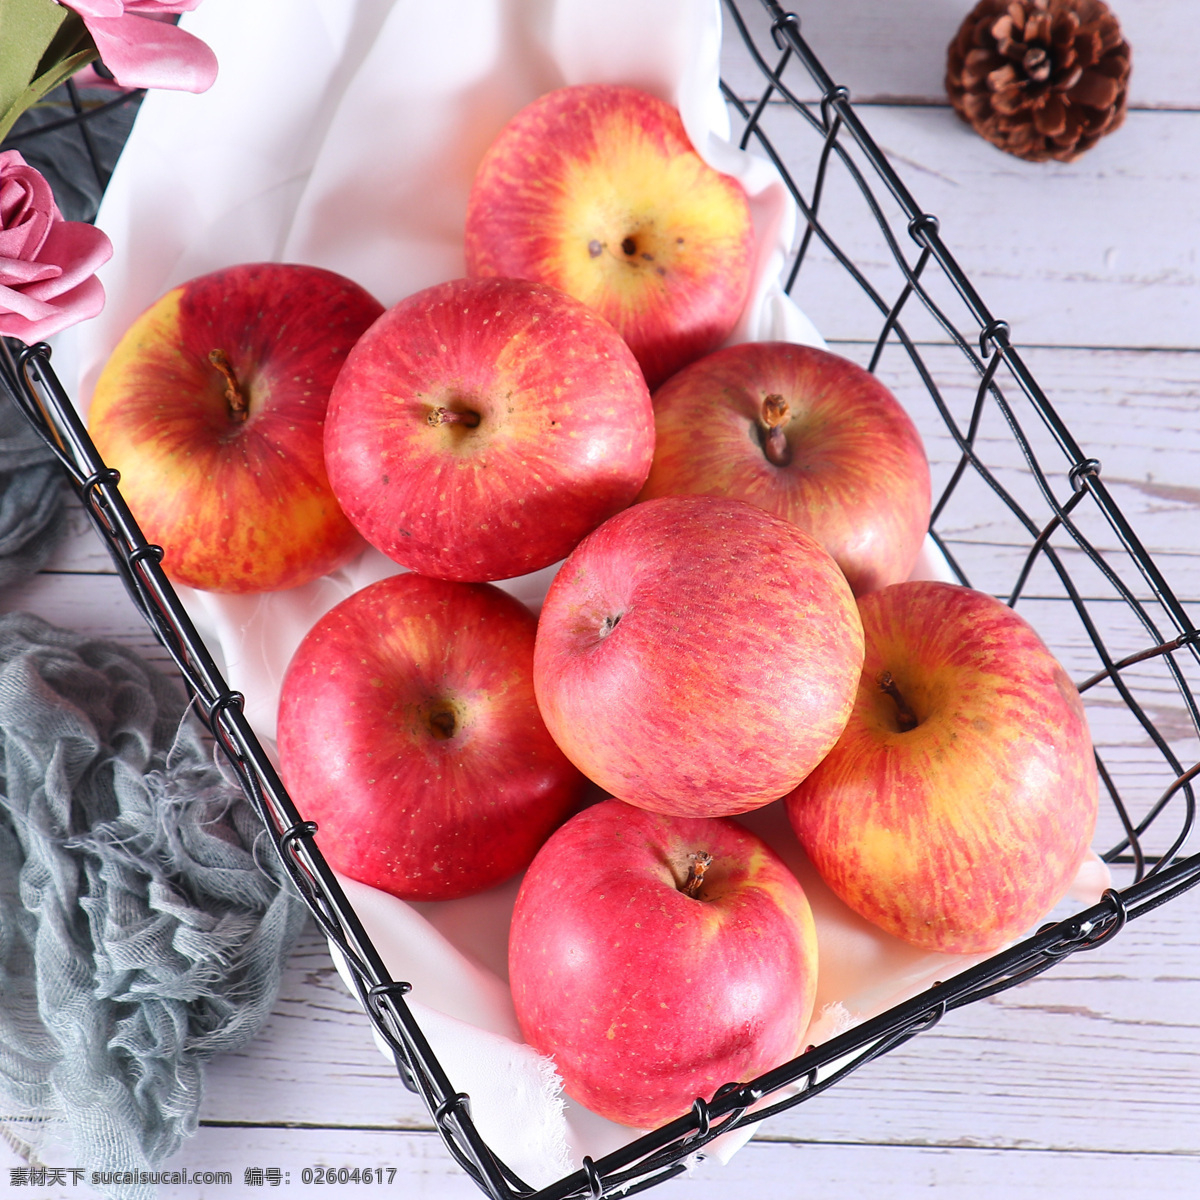 红苹果 拍摄 素材图片 苹果 水果 水果图 水果素材 苹果素材 苹果特写 紫色背景 苹果图片 苹果棚拍 苹果高清图 水果高清图 苹果图片下载 苹果设计素材 水果设计素材 生物世界